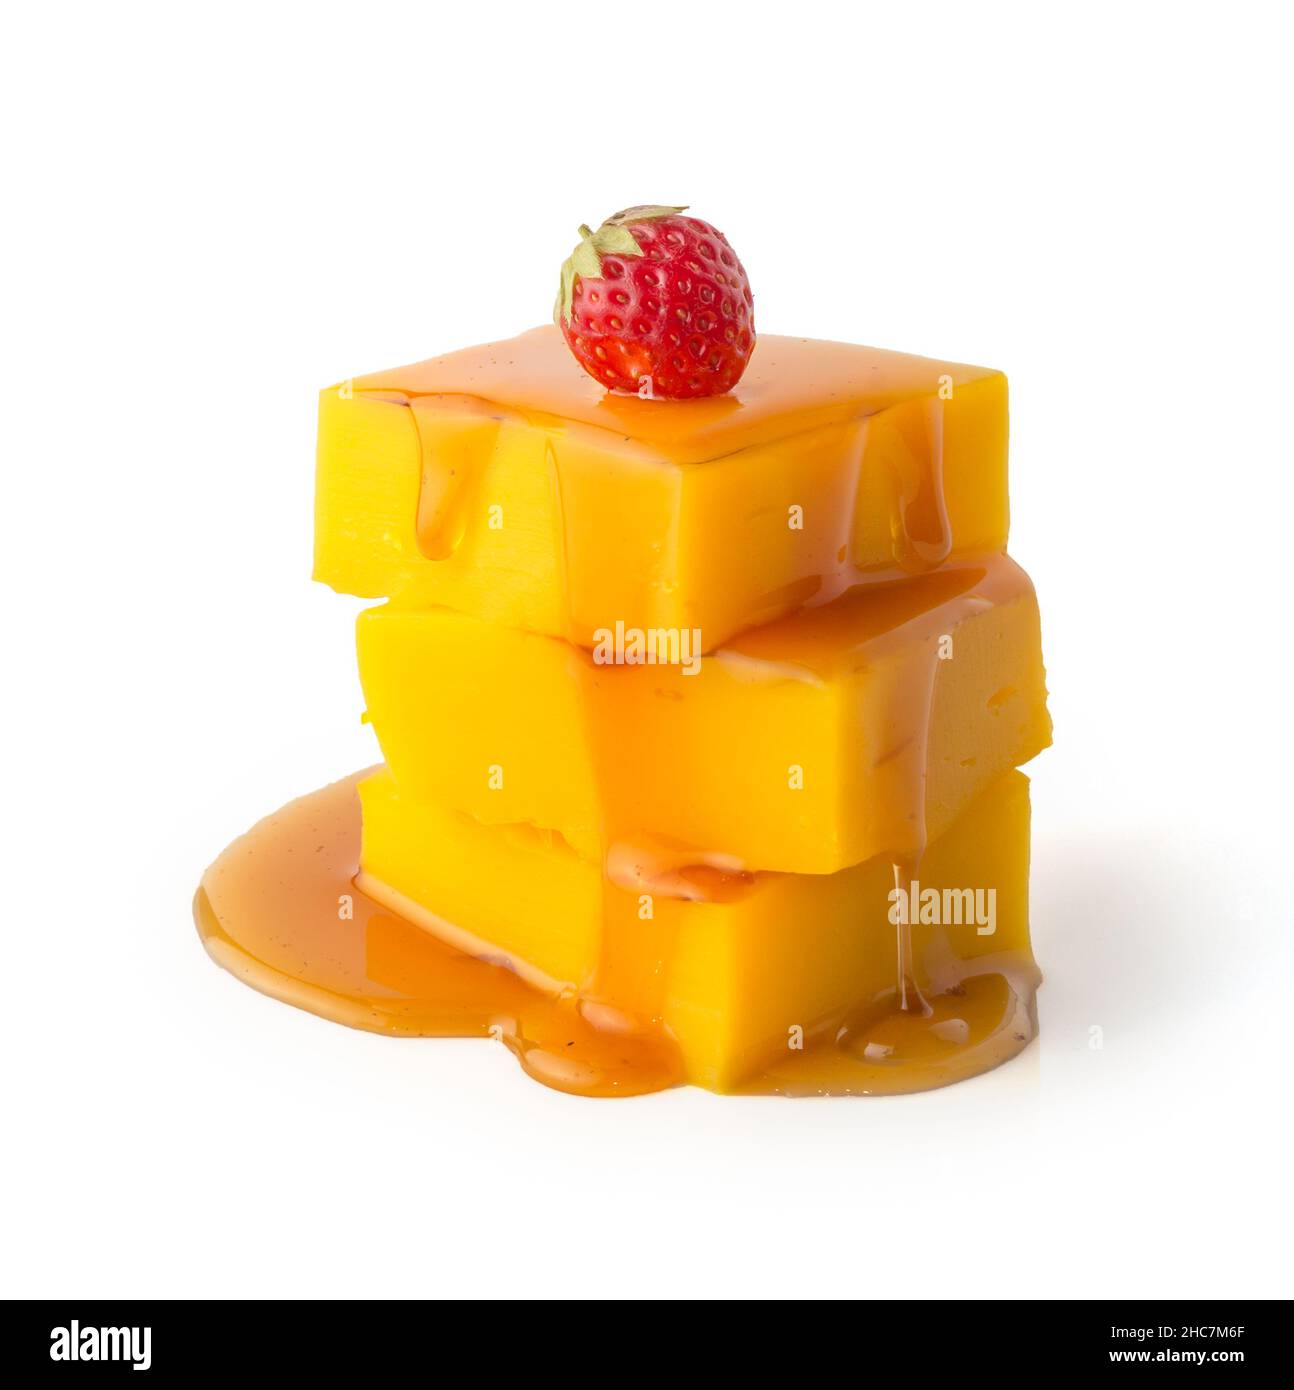 pezzetti di crema pasticcera con salsa di caramello versata, fragola rossa matura sulla parte superiore isolata su sfondo bianco Foto Stock